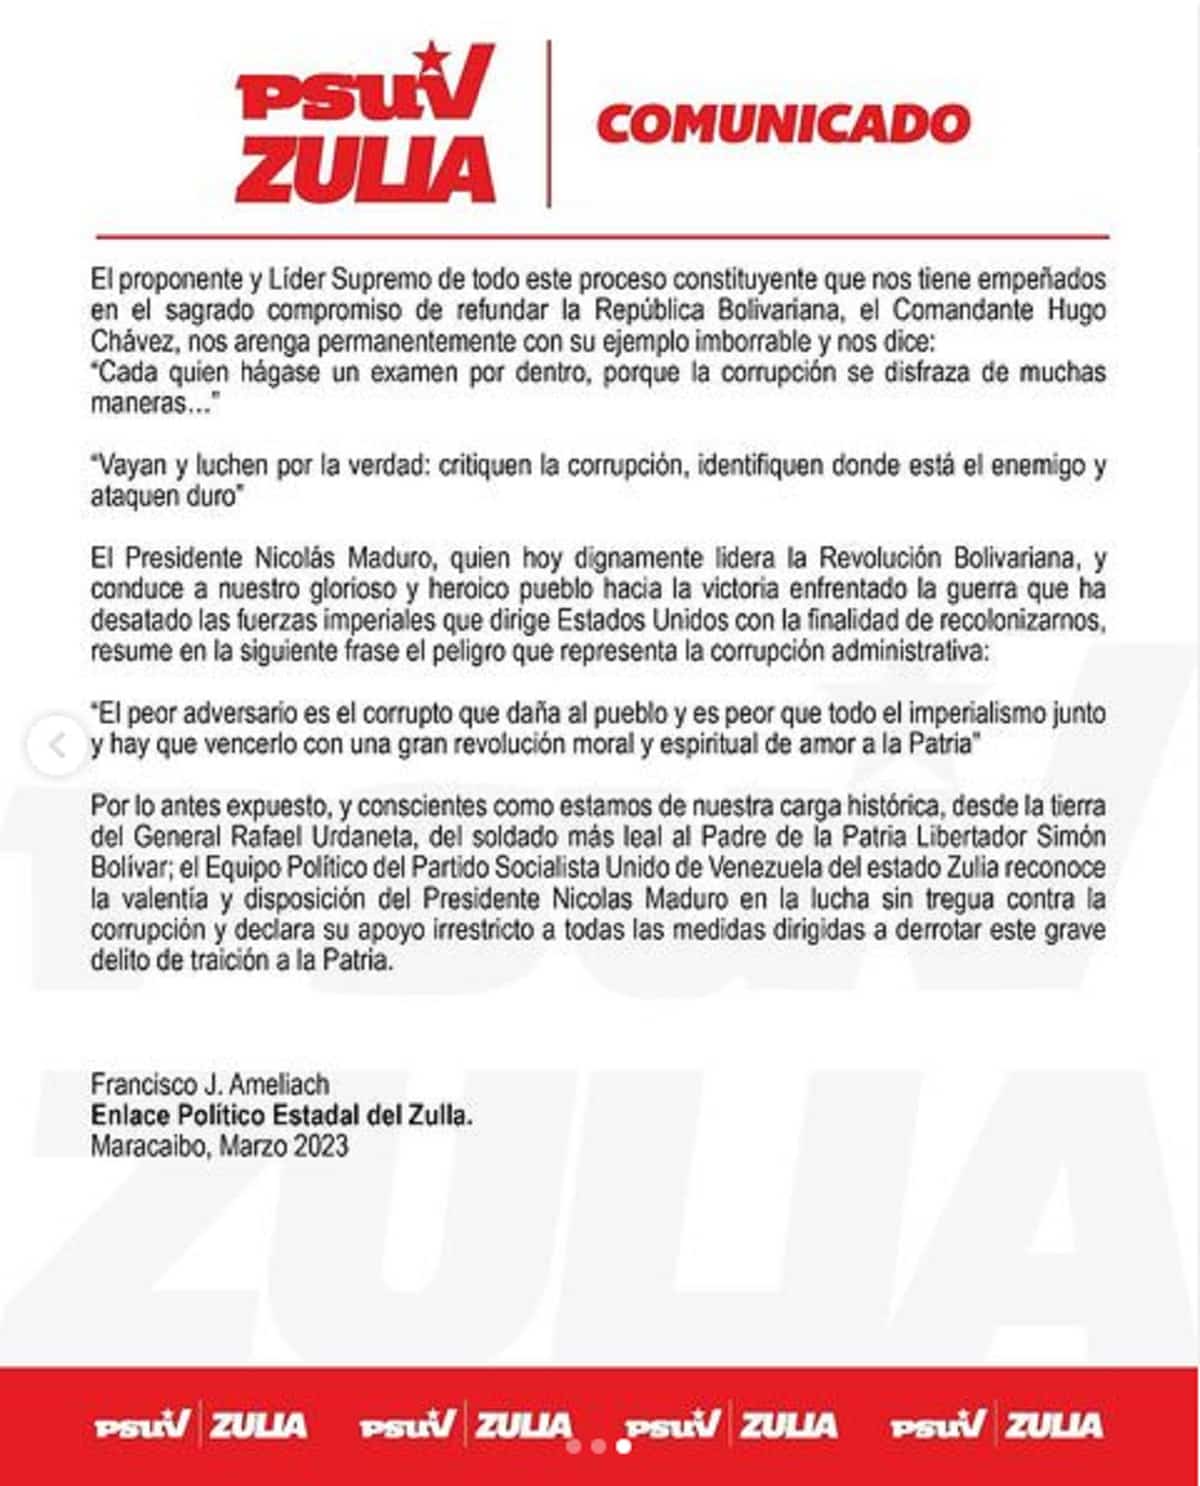 PSUV Zulia acciones anticorrupción